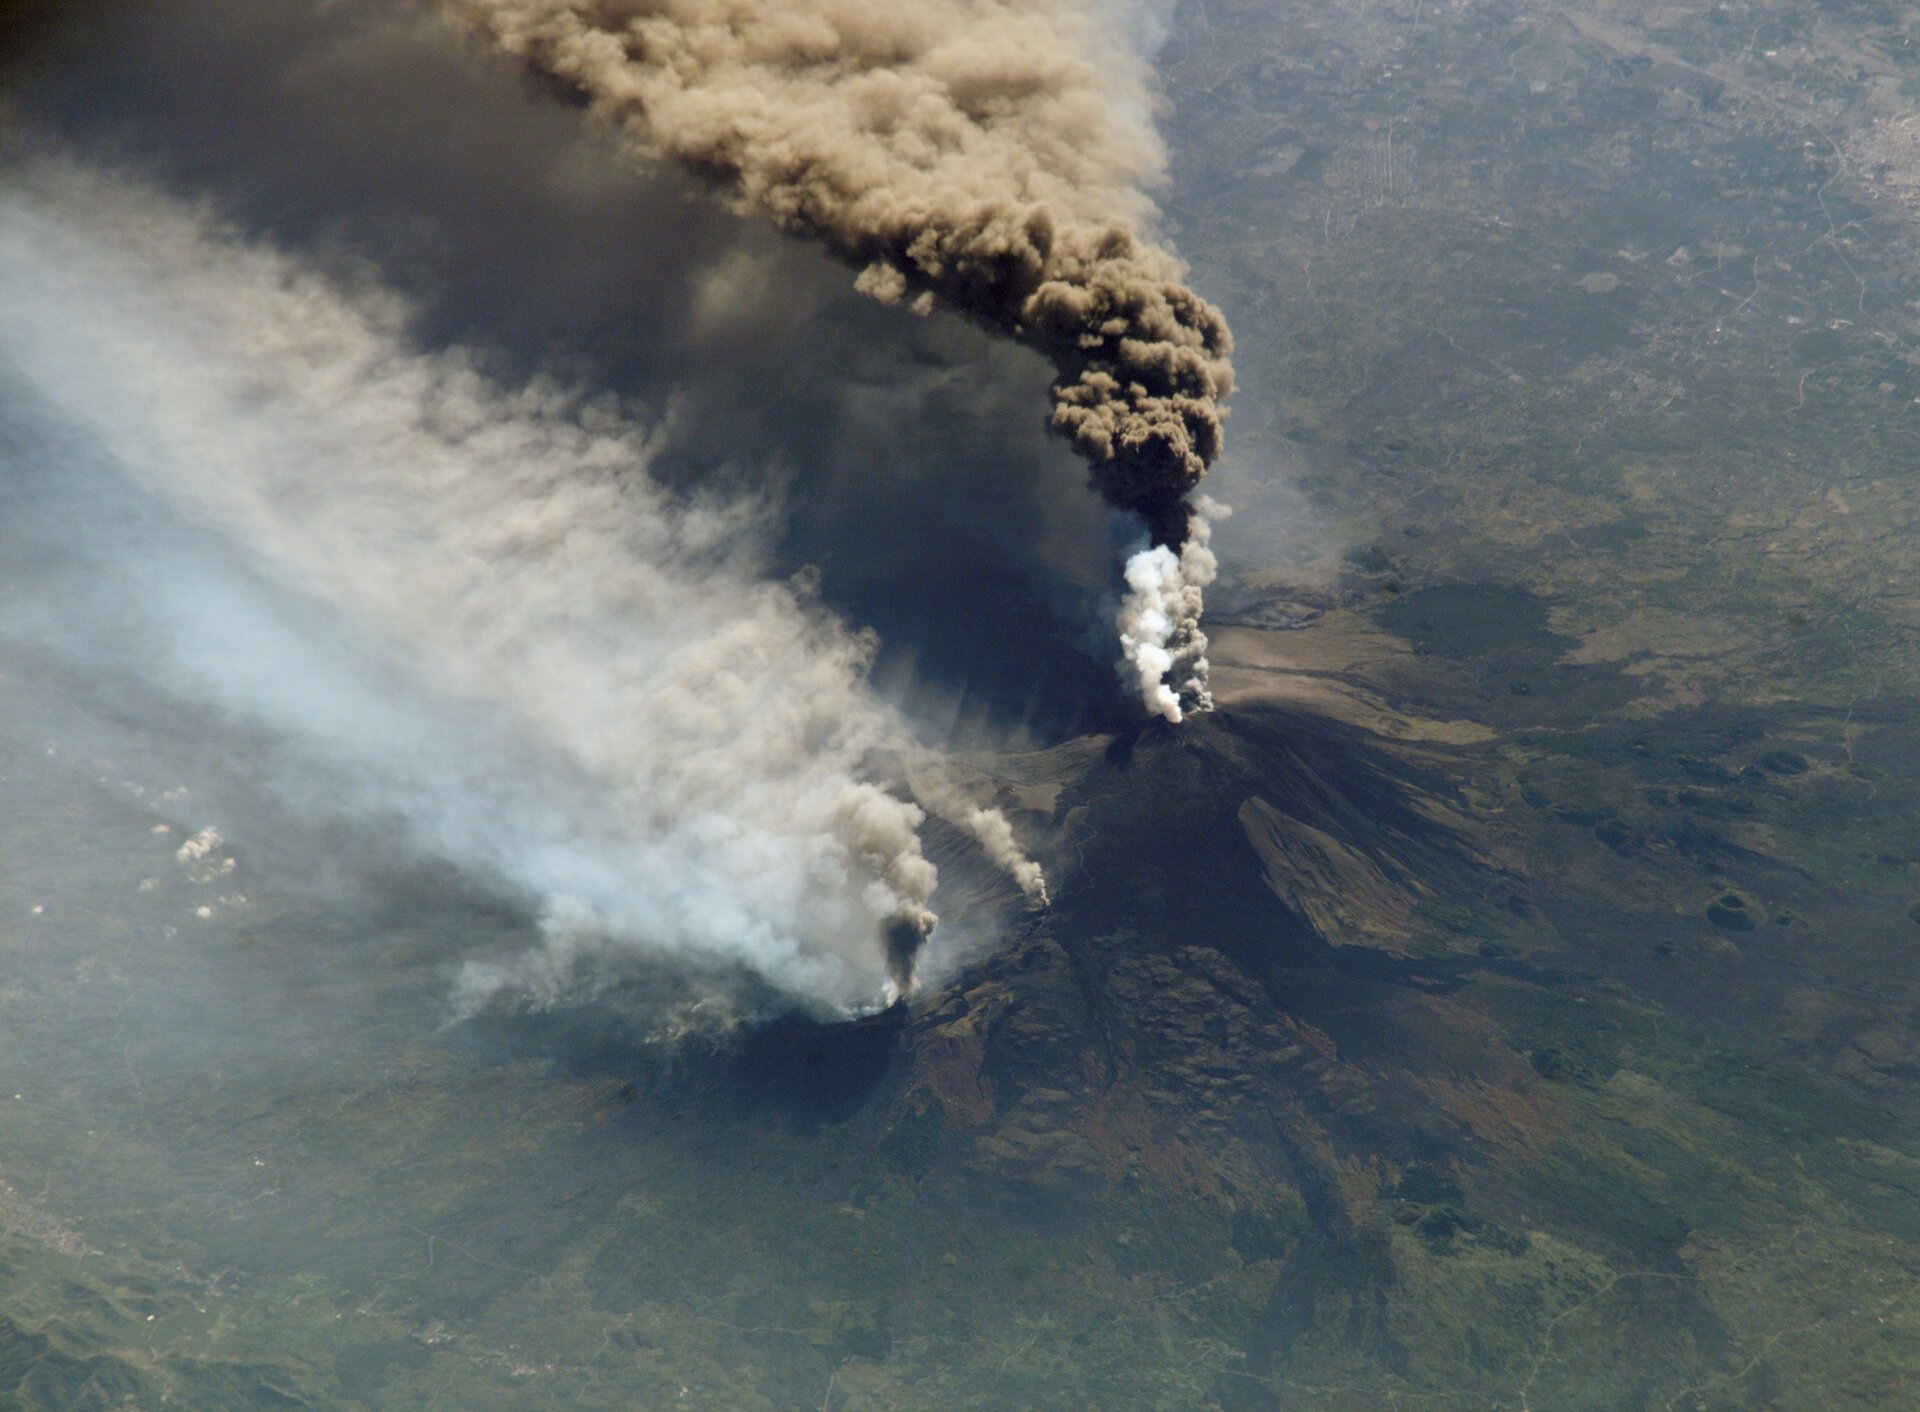 Fotografia wykonana z góry przedstawia wulkan podczas erupcji. Ze szczytu wulkanu wydobywa się chmura biało‑brazowych gazów i pyłów.